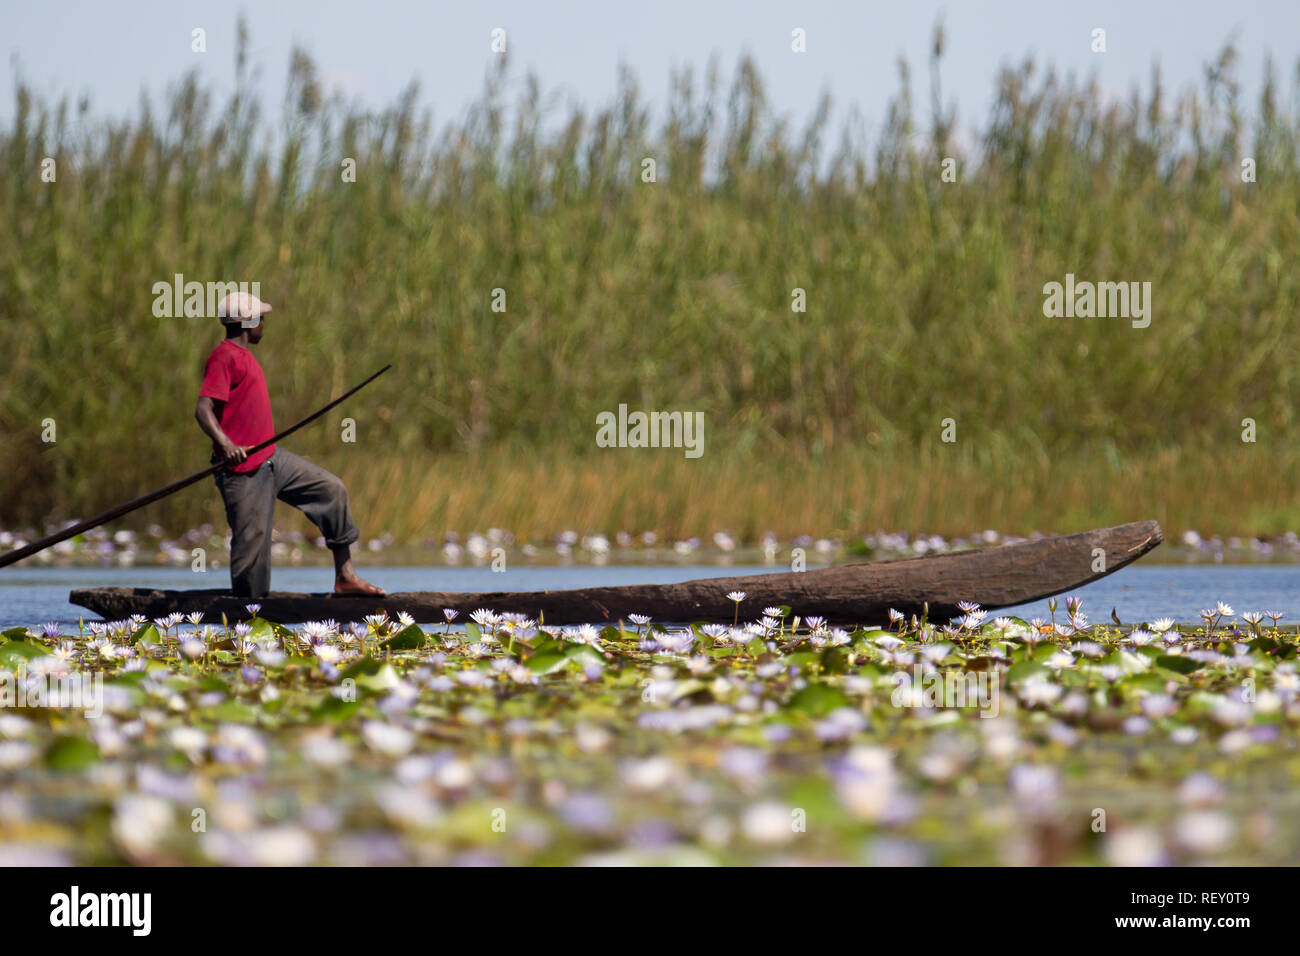 Angeln ist eine primäre wirtschaftliche Aktivität für Menschen in und um Bangweulu Feuchtgebiete, Sambia. Stockfoto